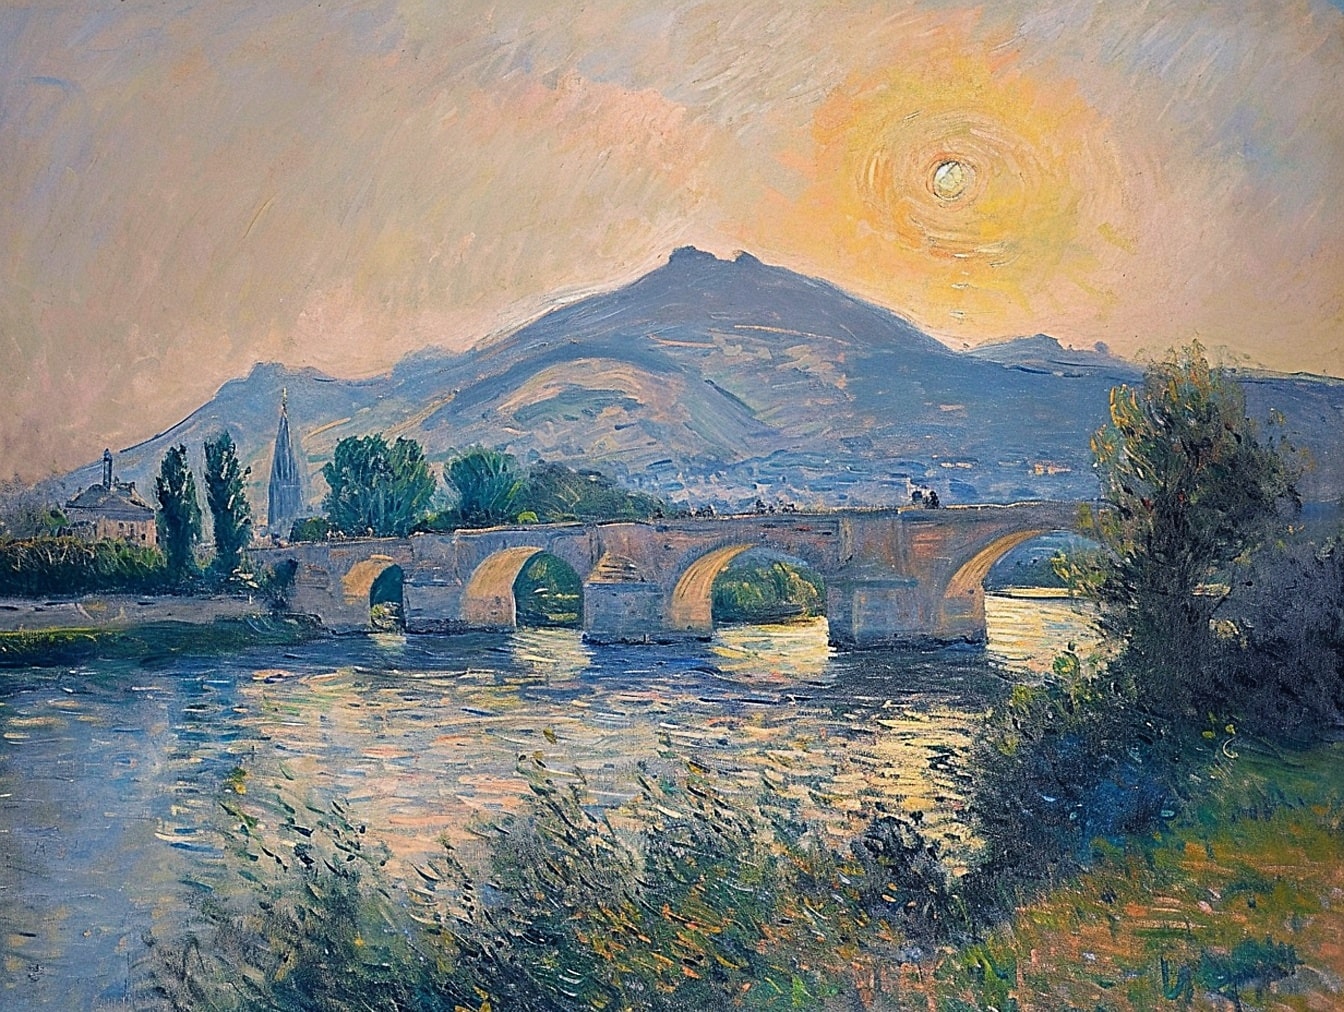 Oljemålning av en gammal stenbro över en flod med solnedgång över kullar i bakgrunden